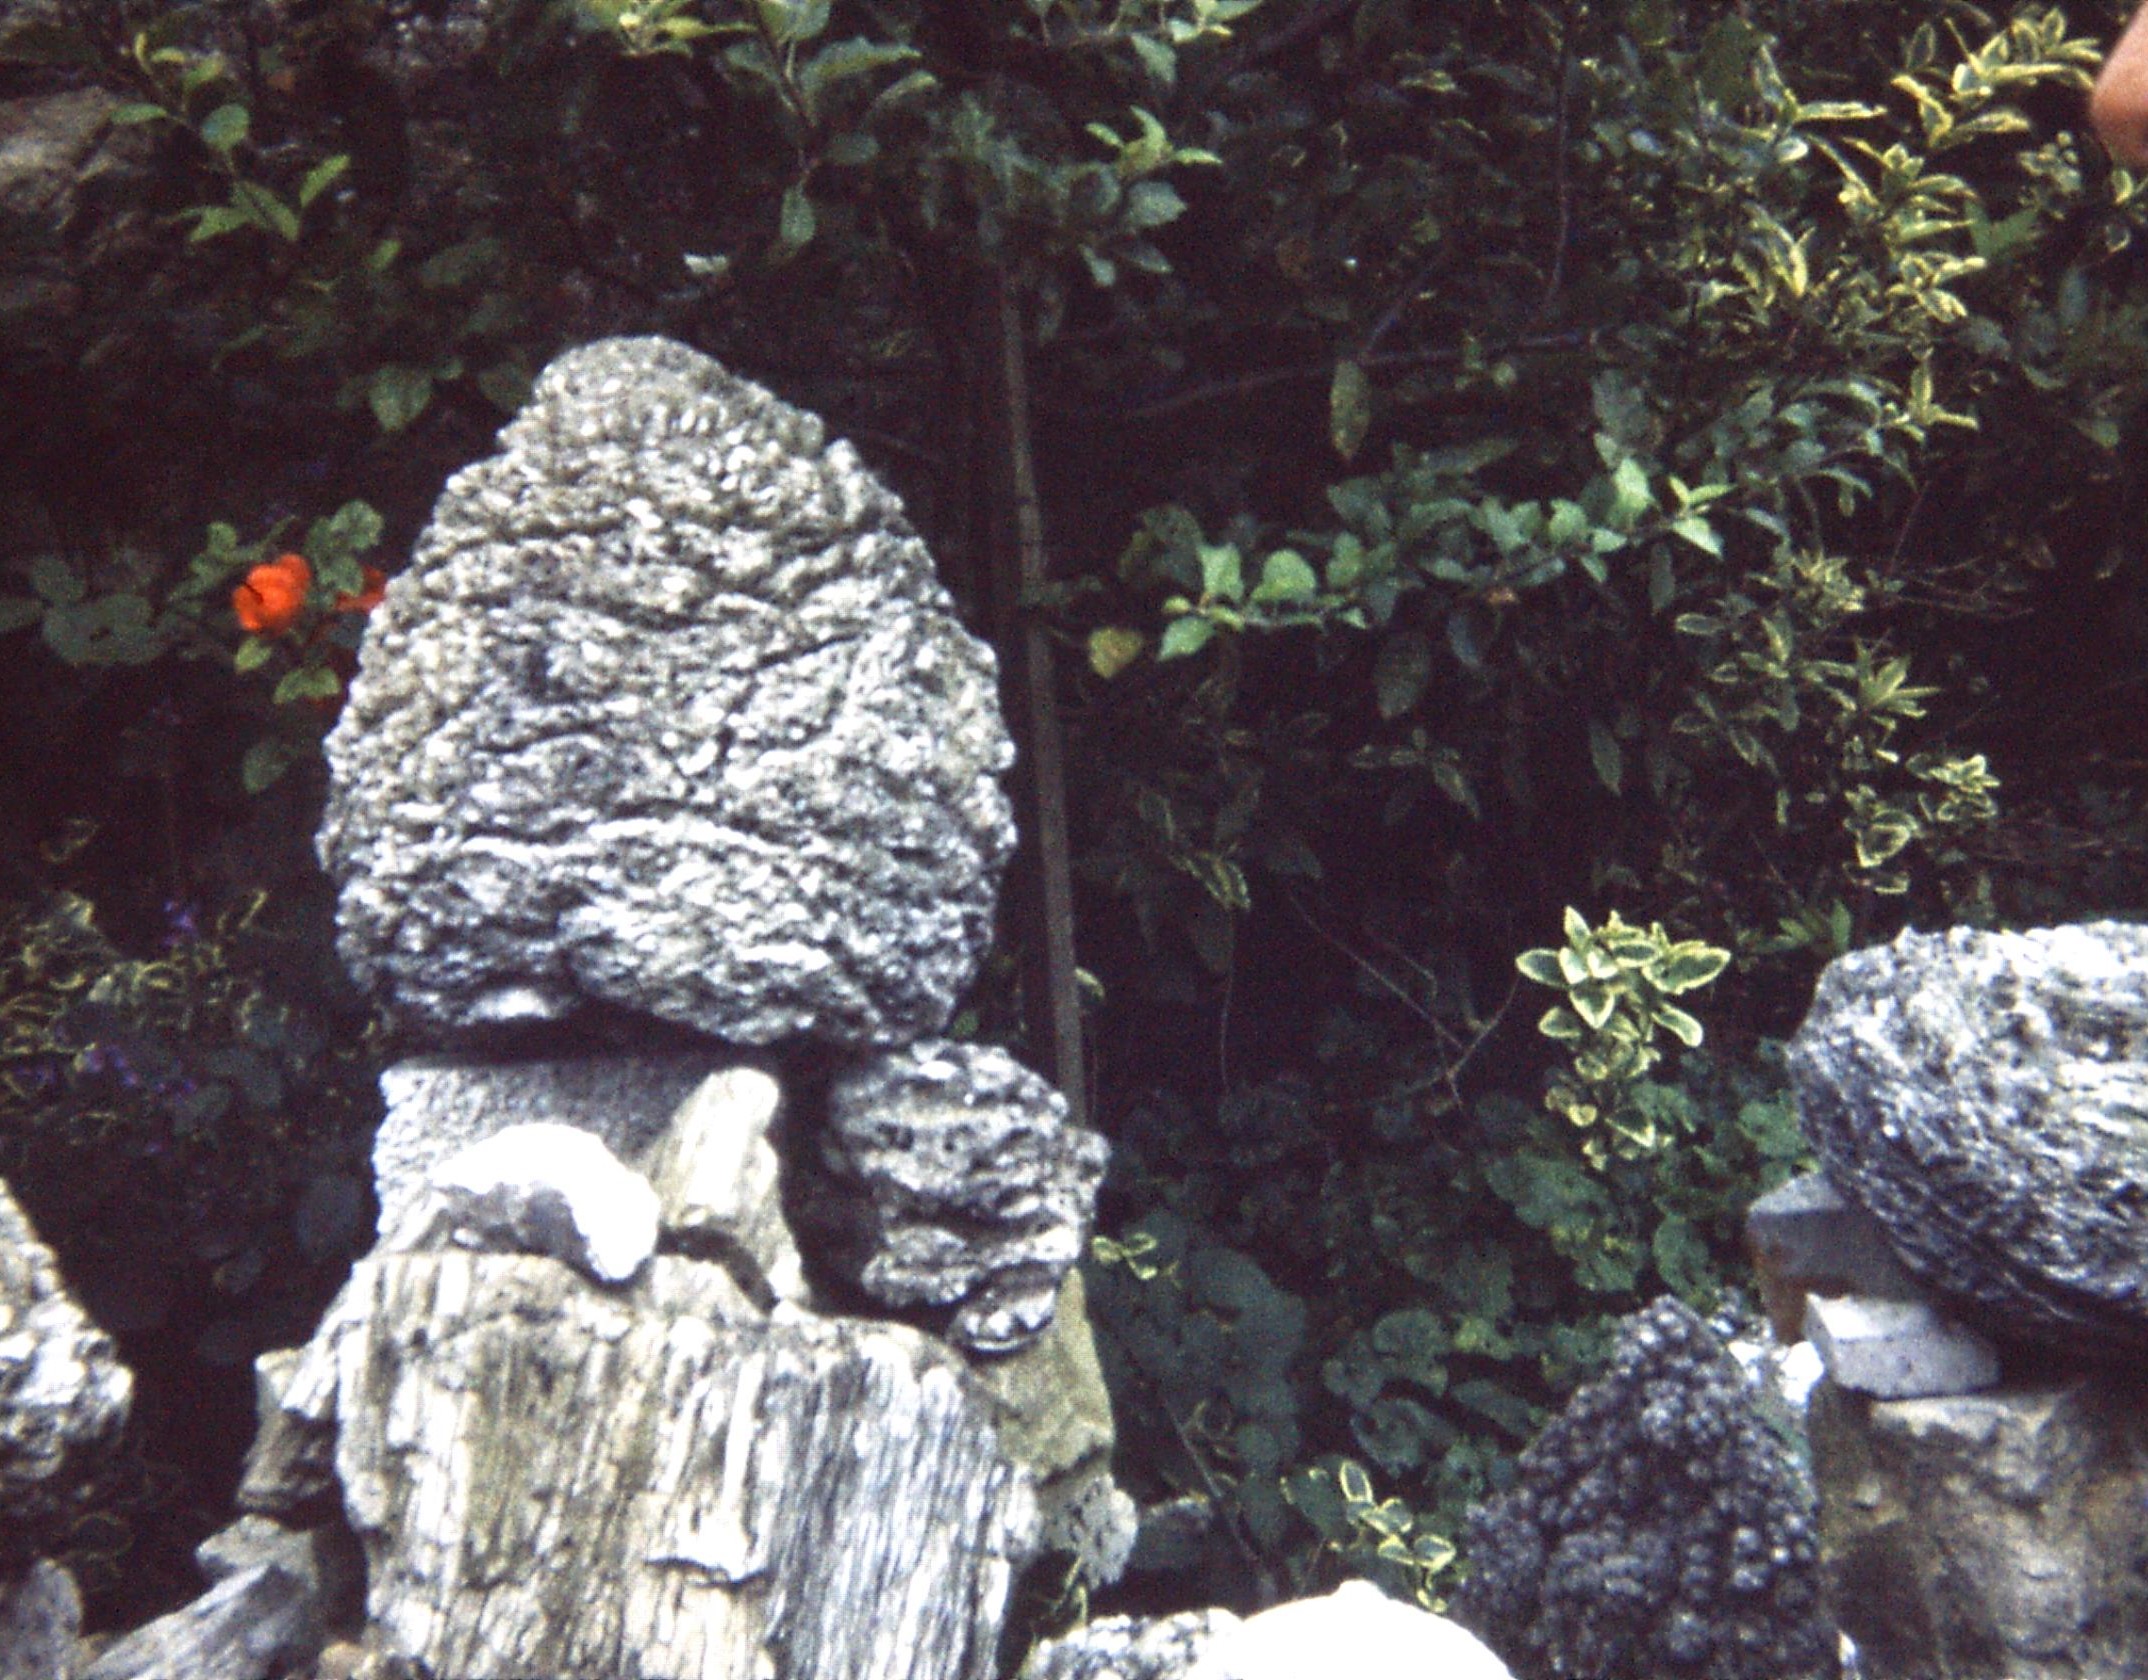 1979 Dorset. Portland. Fossil Garden. Cycad